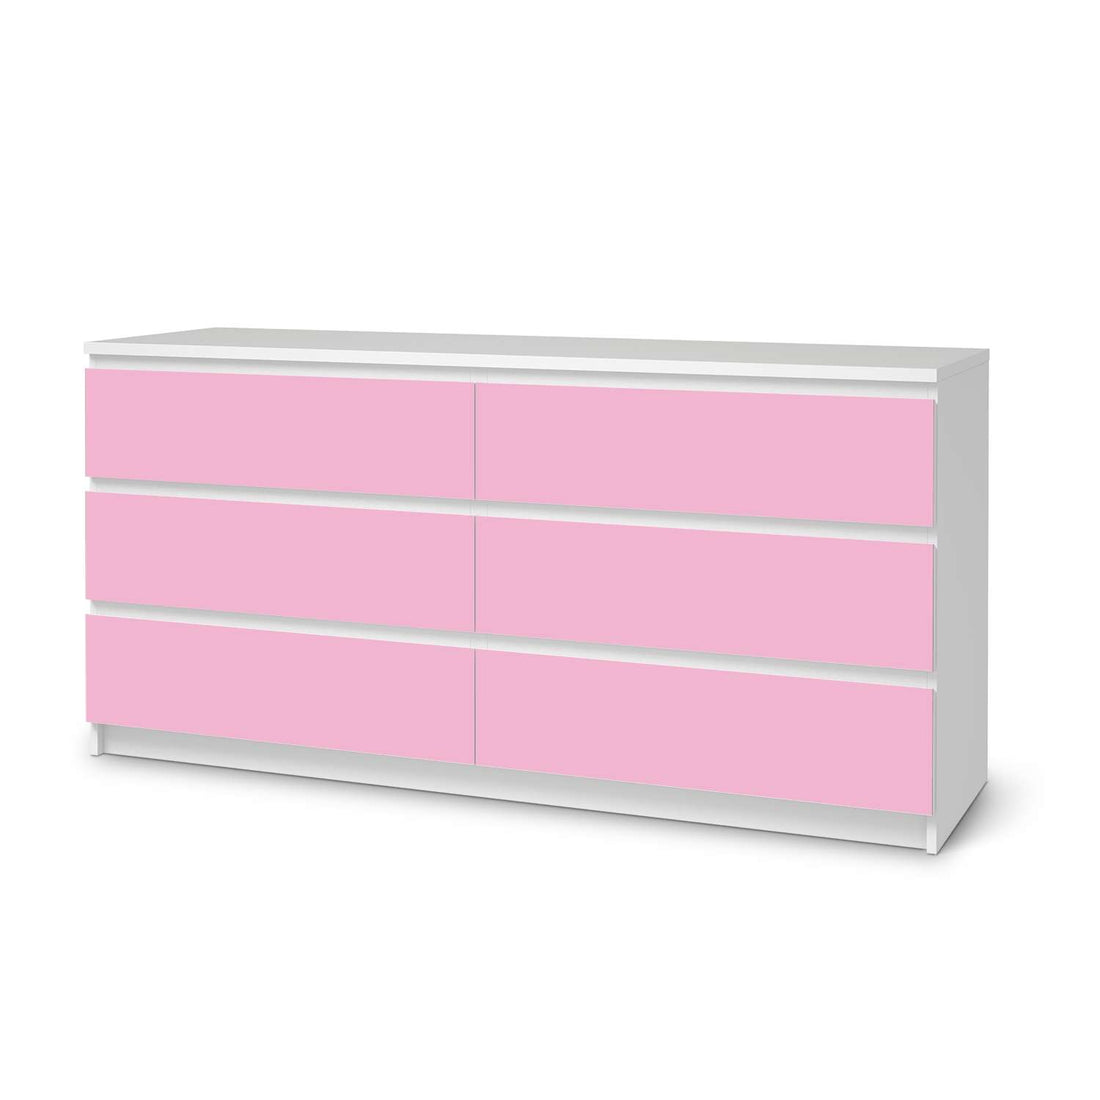 Möbelfolie Pink Light - IKEA Malm Kommode 6 Schubladen (breit)  - weiss